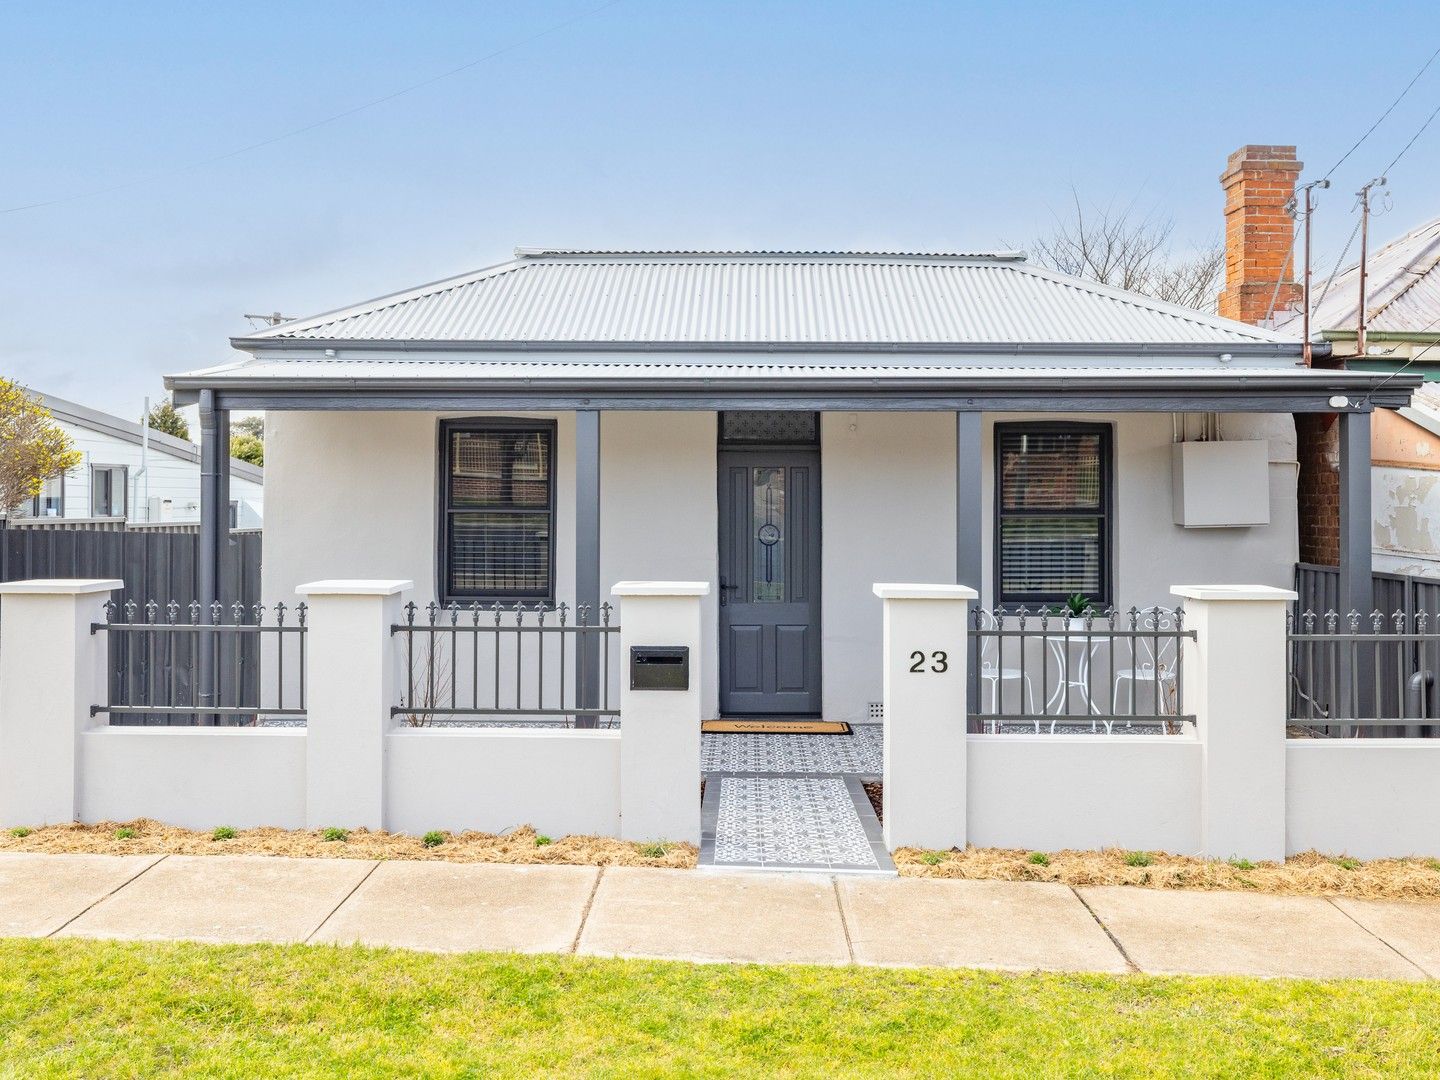 4 bedrooms House in 23 Lambert Street BATHURST NSW, 2795